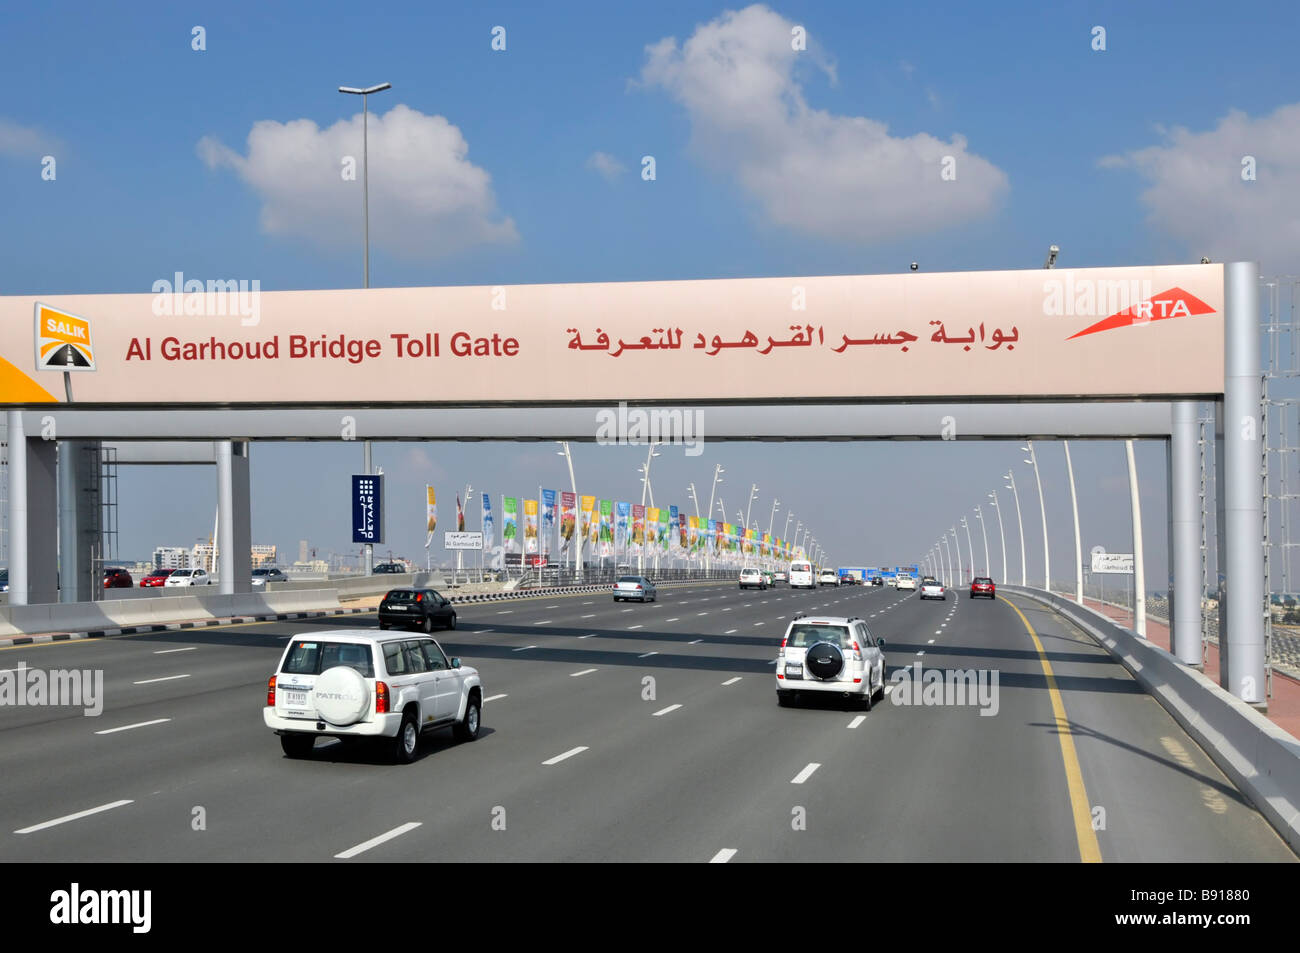 Dubai Autoverkehr auf modernen sieben-spurigen Autobahnen und RTA Wegweiser zur Al Garhoud Bridge toll Gate Vereinigte Arabische Emirate VAE Naher Osten Stockfoto